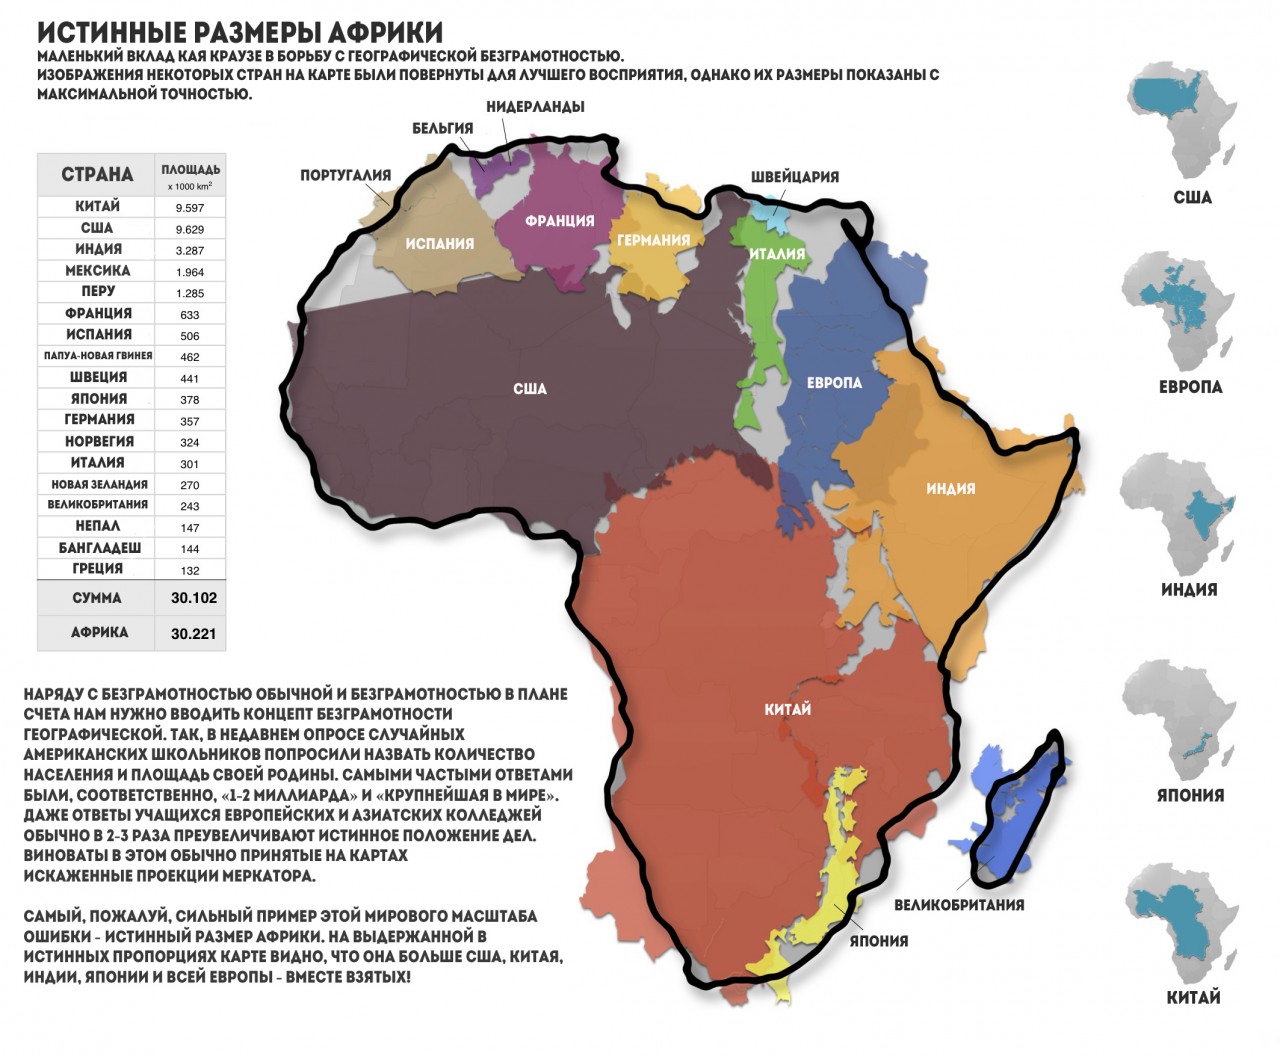 Настоящий размер Африки